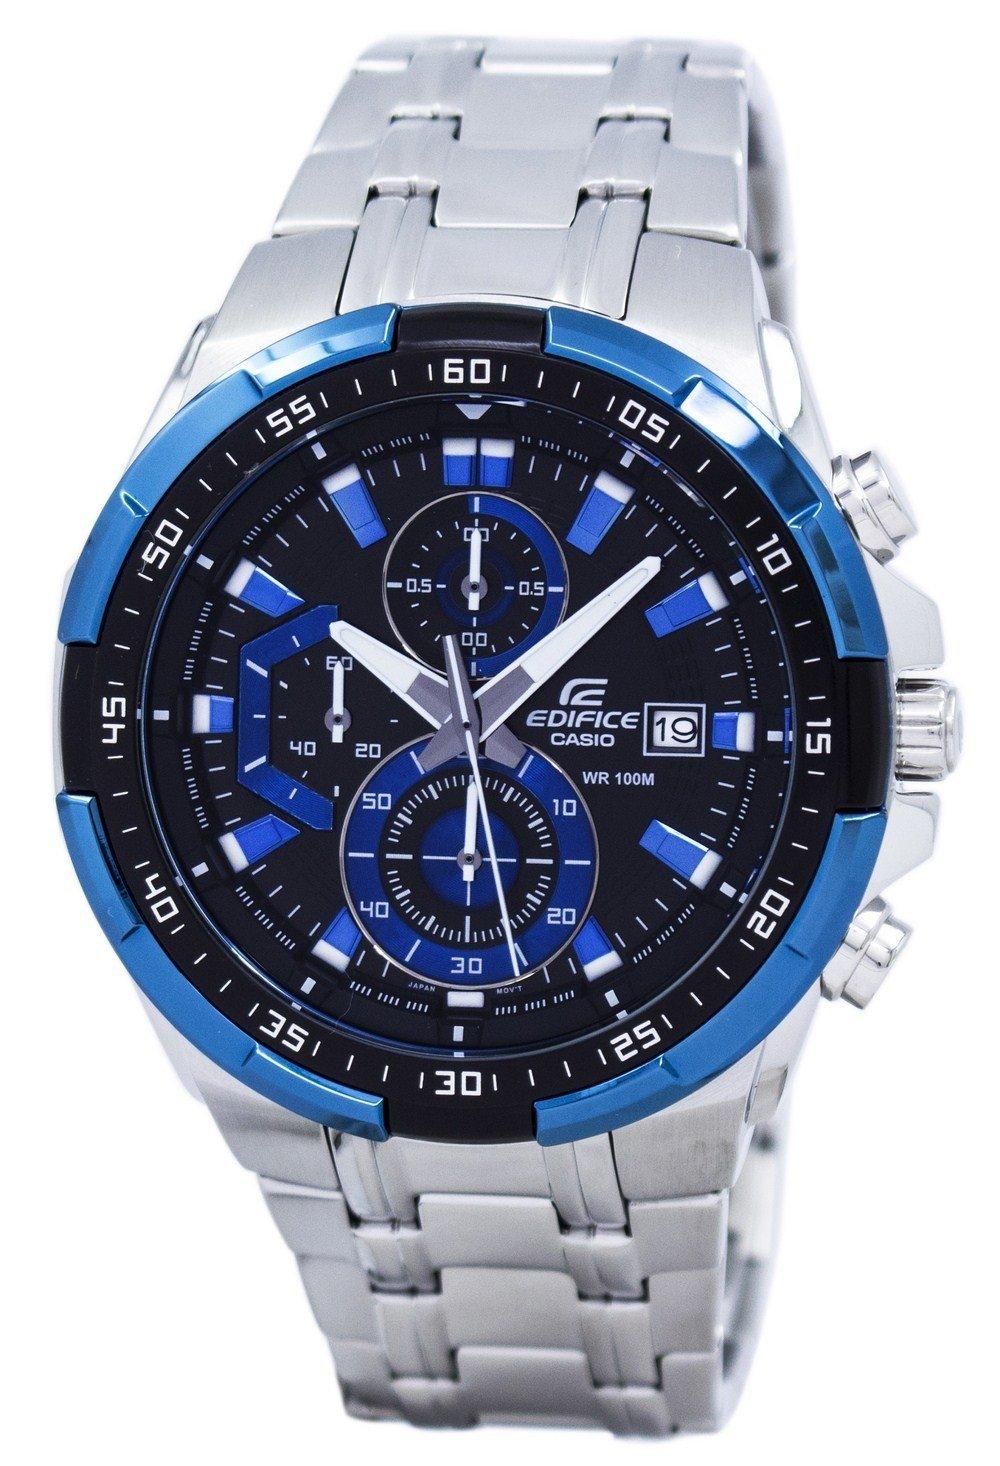 Casio Edifice Chronograph Quartz EFR-539D-1A2V EFR539D-1A2V Men's Watch